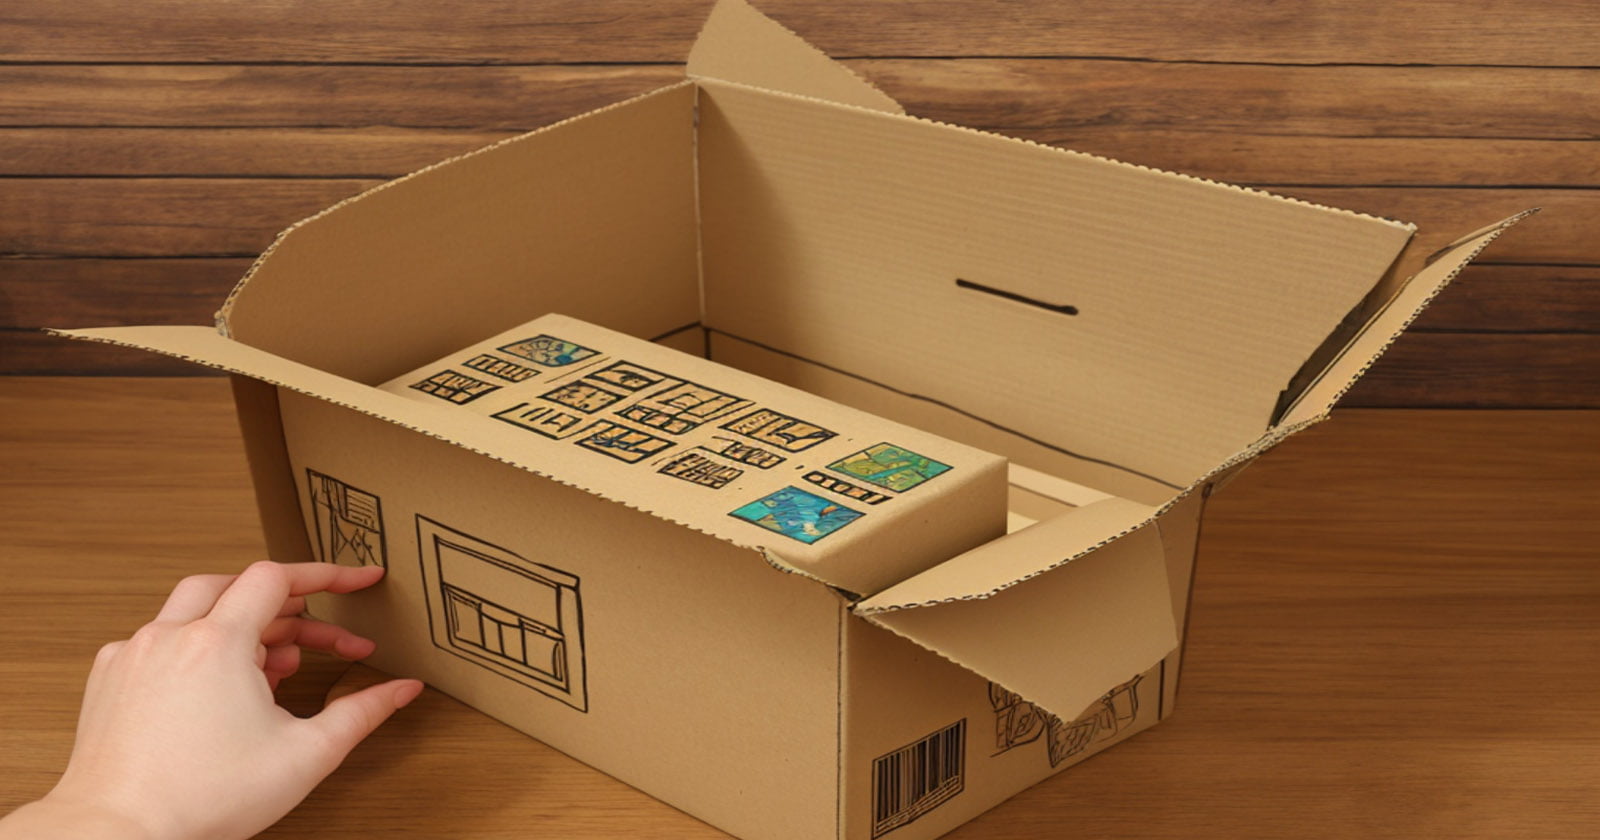 5 Projetos Criativos de Reutilização de Caixas de Papelão para Você Experimentar em Casa